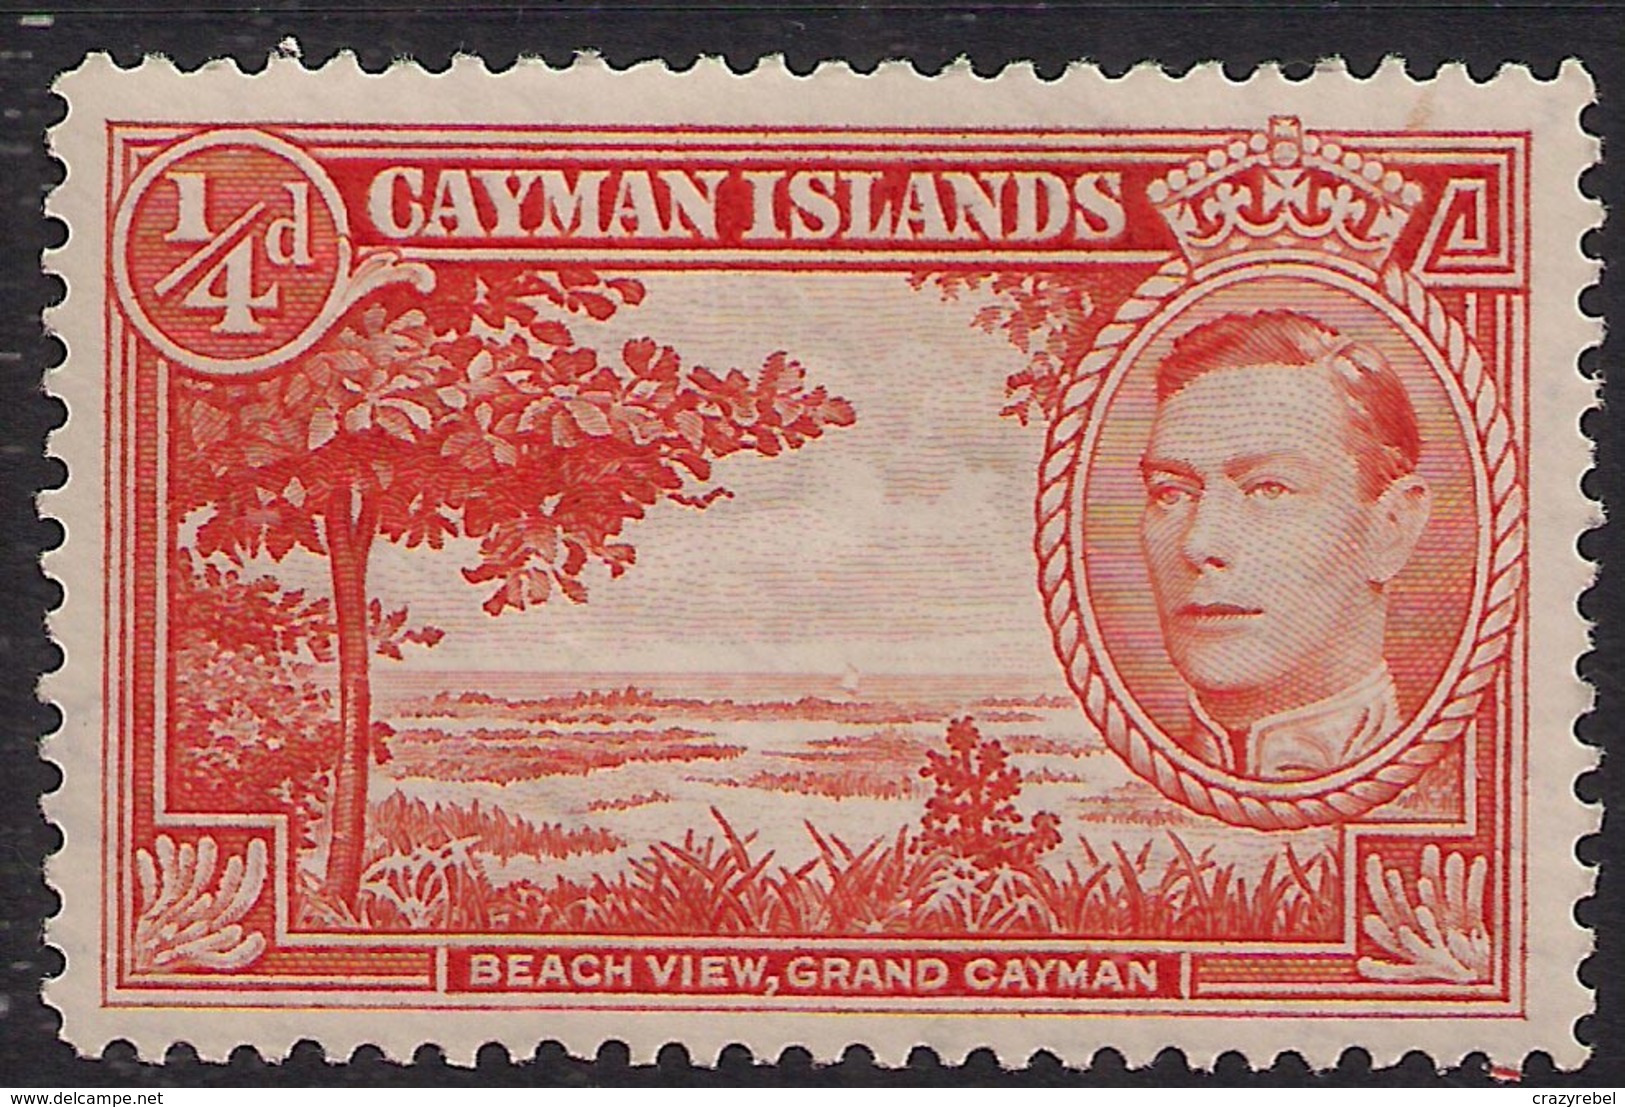 Cayman Islands 1938 - 48 KGV1 1/4d Red Orange Beach View Umm 115 ( K1405 ) - Cayman Islands